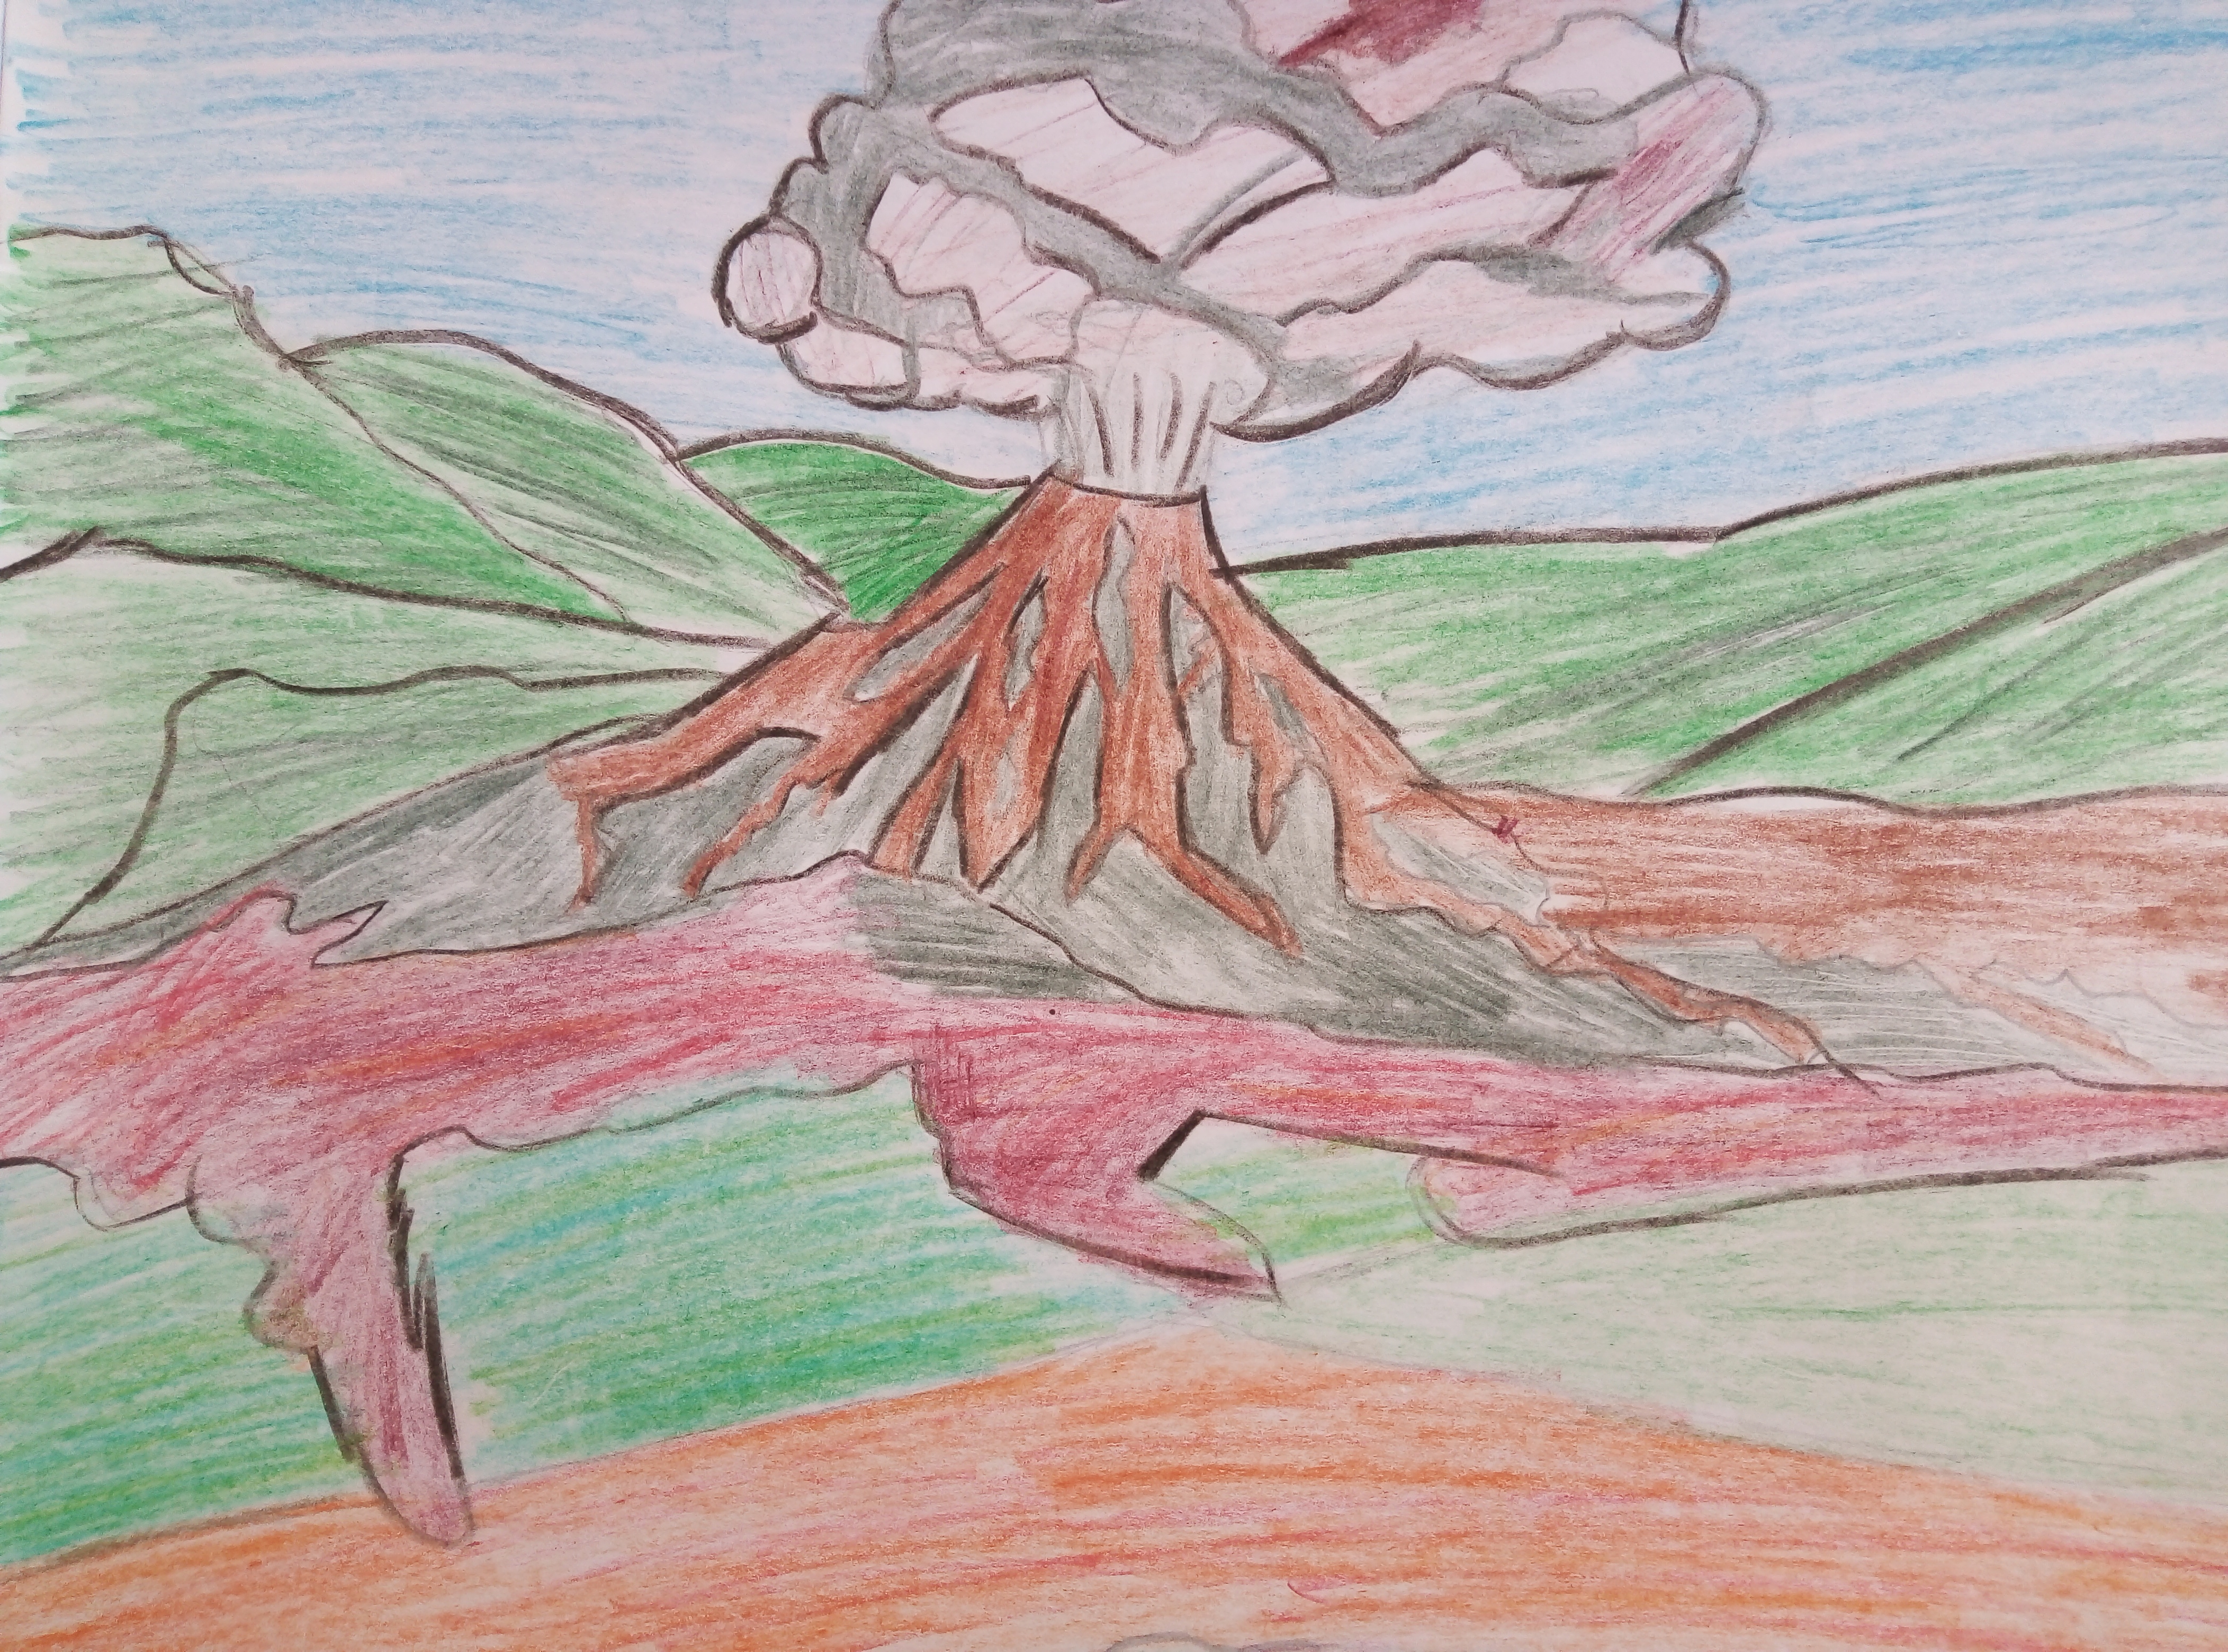 Извержение вулкана рисунок поэтапно